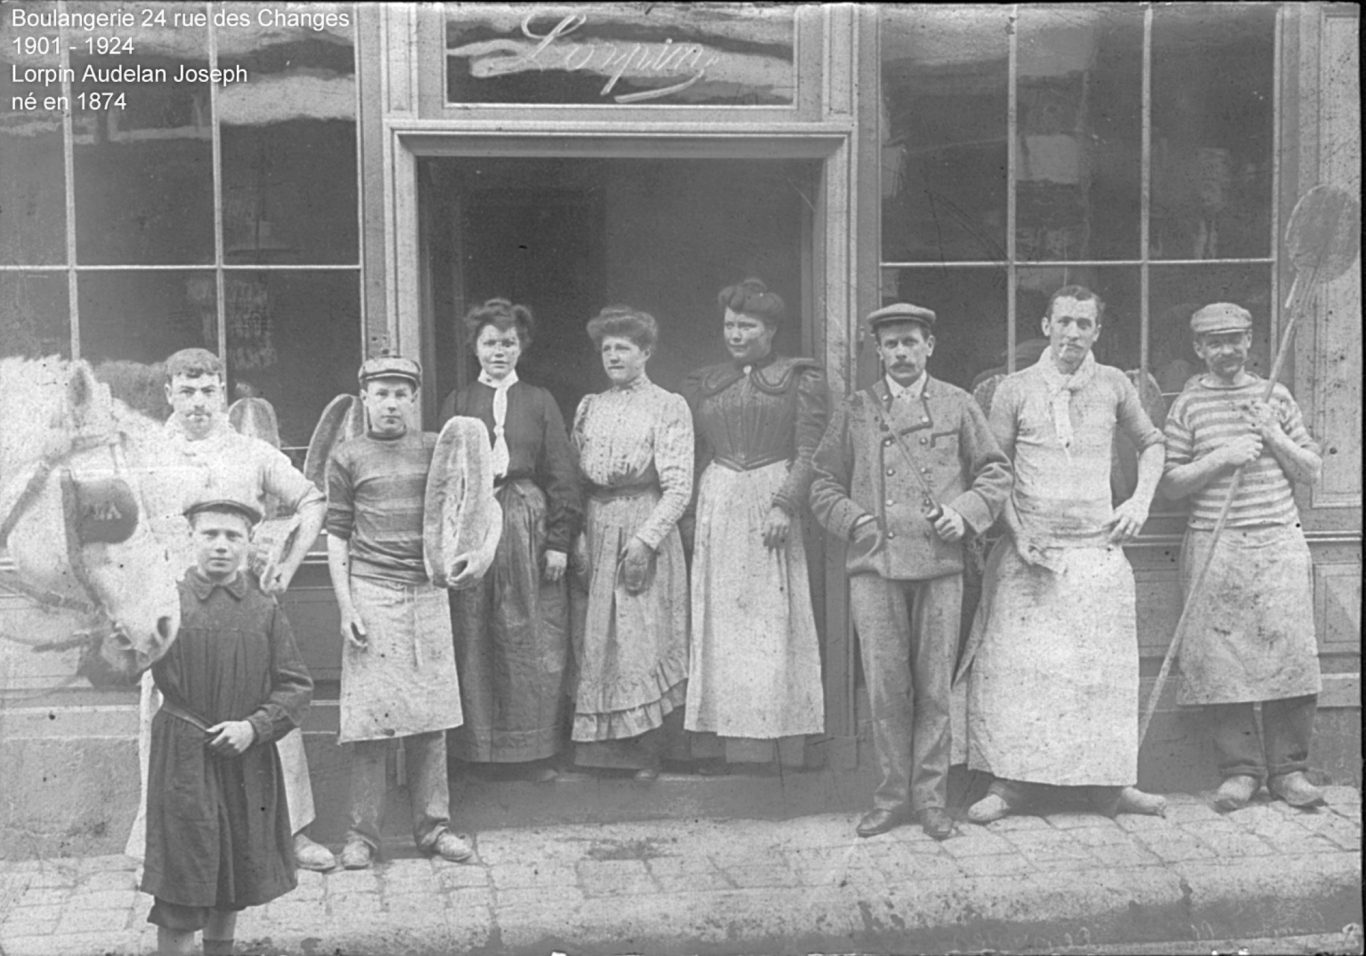 Boulangerie 24 rue des changes (1901-1924) - Lorpin Audelan Joseph